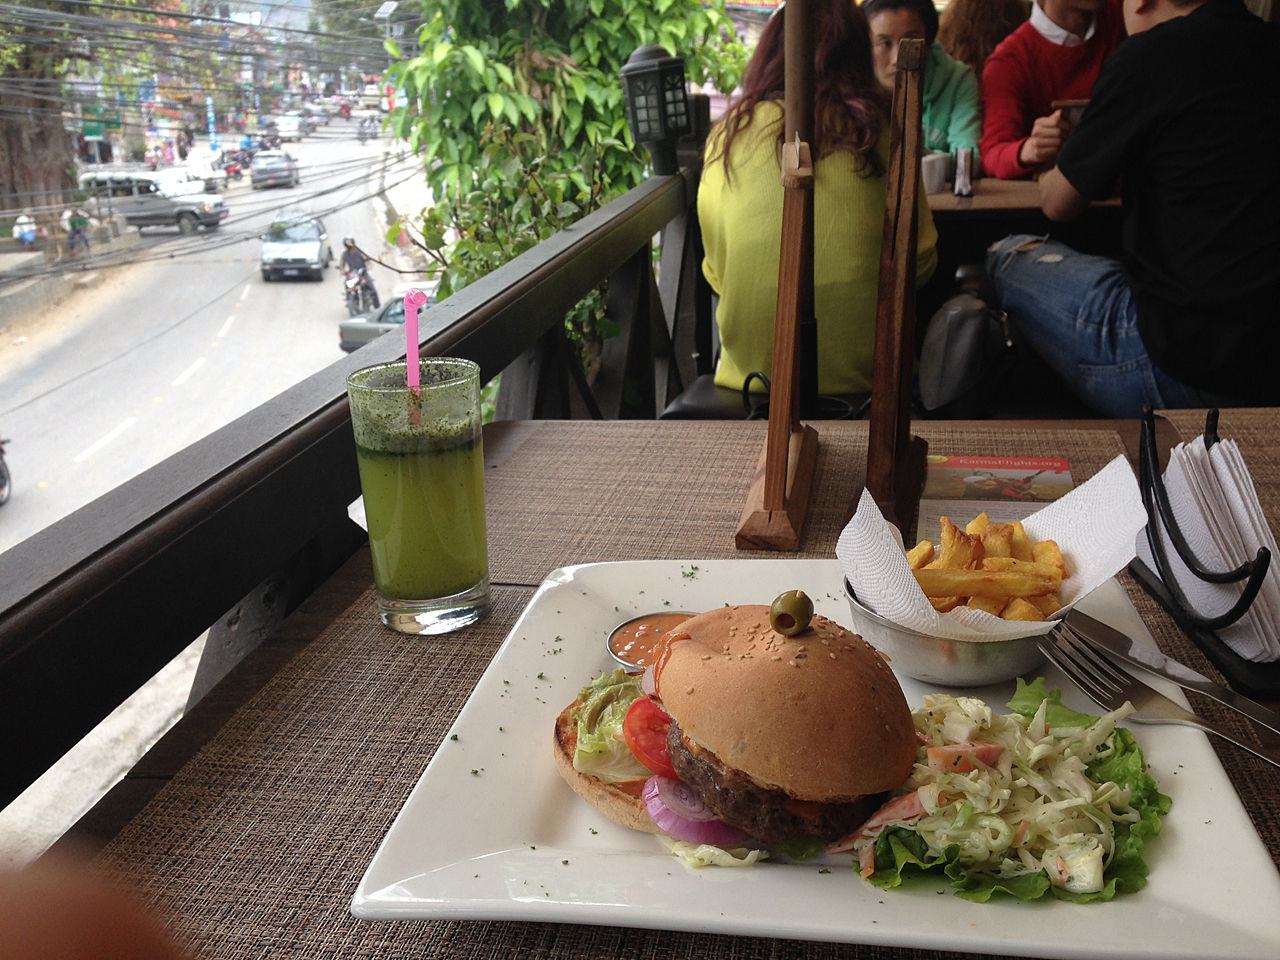  네팔 포카라에서 먹은 수제 햄버거. 포카라에는 서양식을 비롯 여러 나라 식당들이 많다.